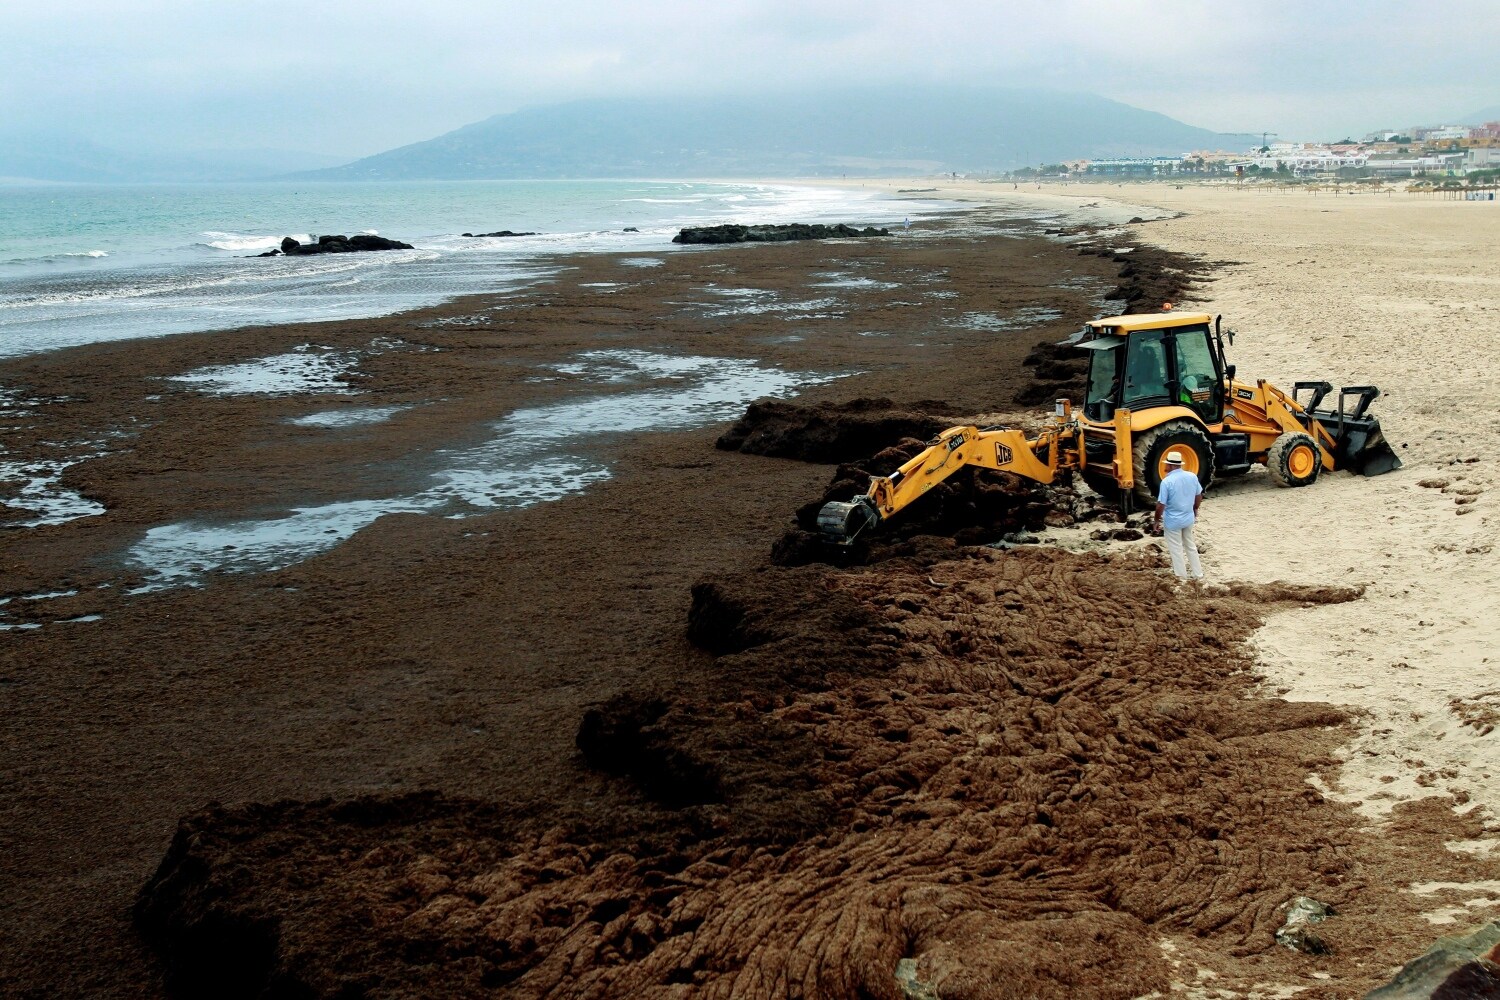 Operarios de la empresa Magimetran S.L. han comenzado la retirada del alga invasora "rugulopterix okamurae" de origen asiático de la playa de Los Lances en Tarifa (Cádiz). El Ayuntamiento de Tarifa ha explicado que las algas, que están llegando a otras partes del Estrecho de Gibraltar, ocupan unos 600 metros lineales de playa de Los Lances.